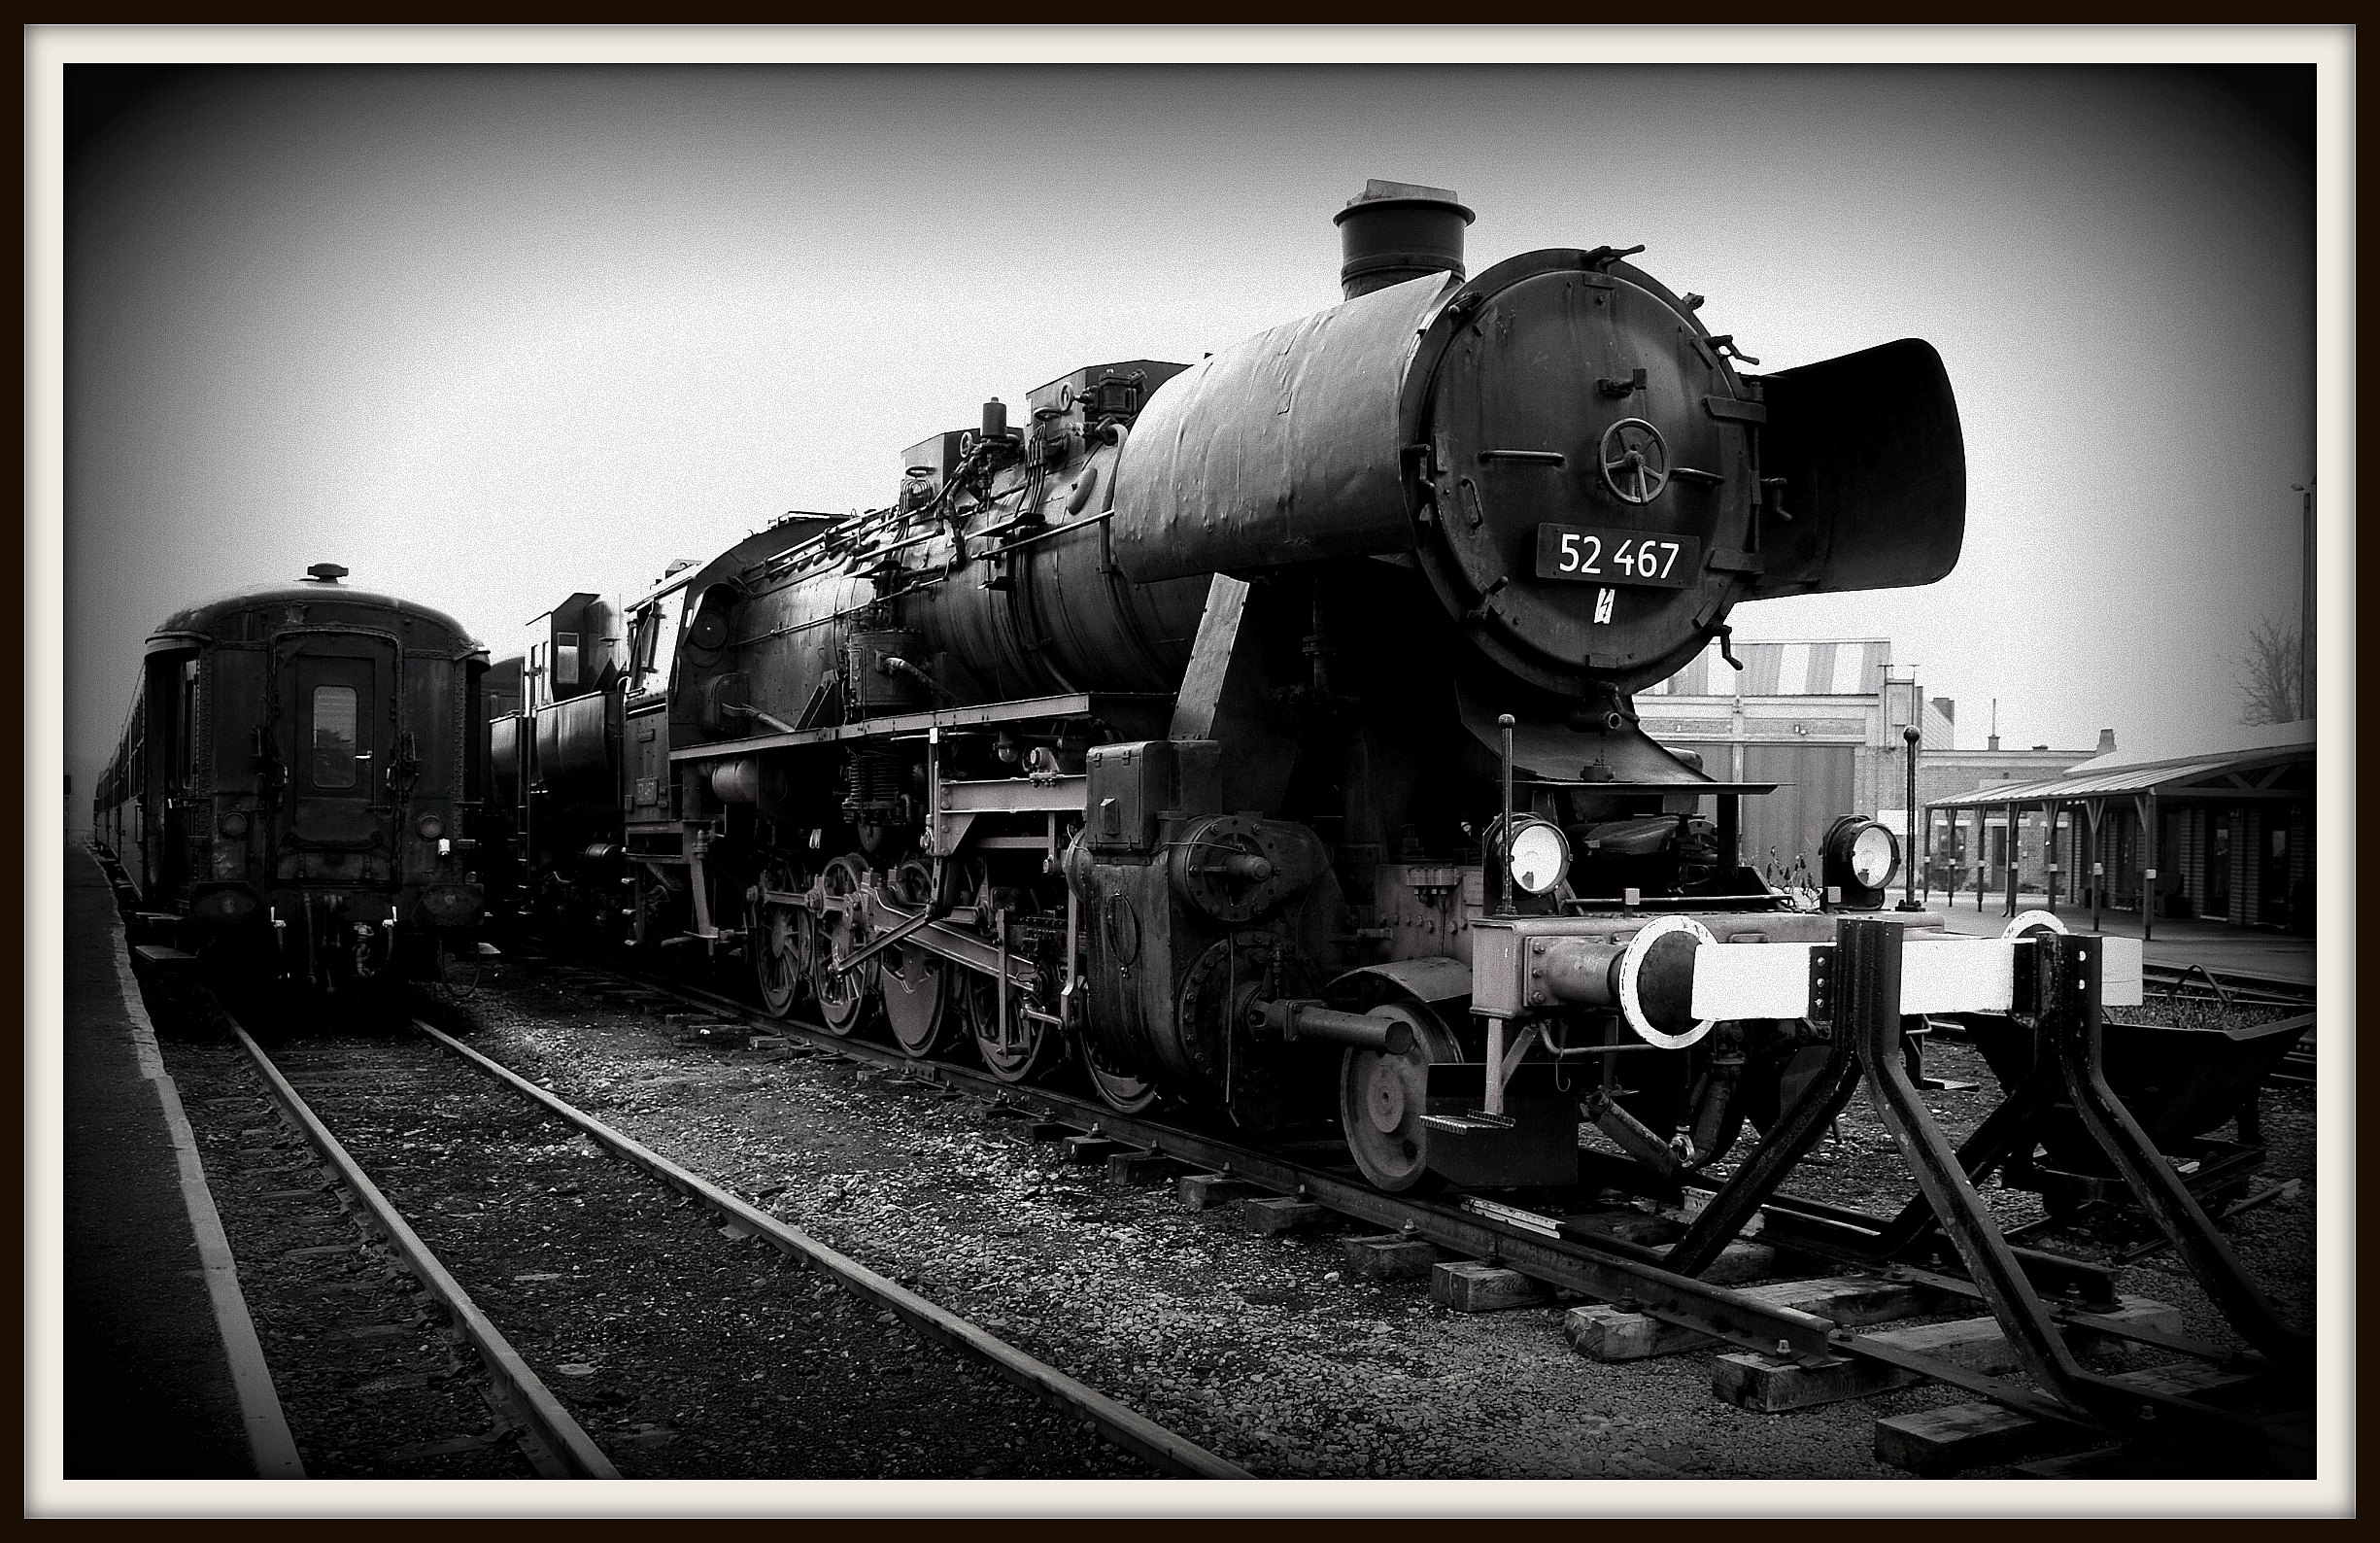 File:Mariembourg Old Train - panoramio.jpg - Wikimedia Commons